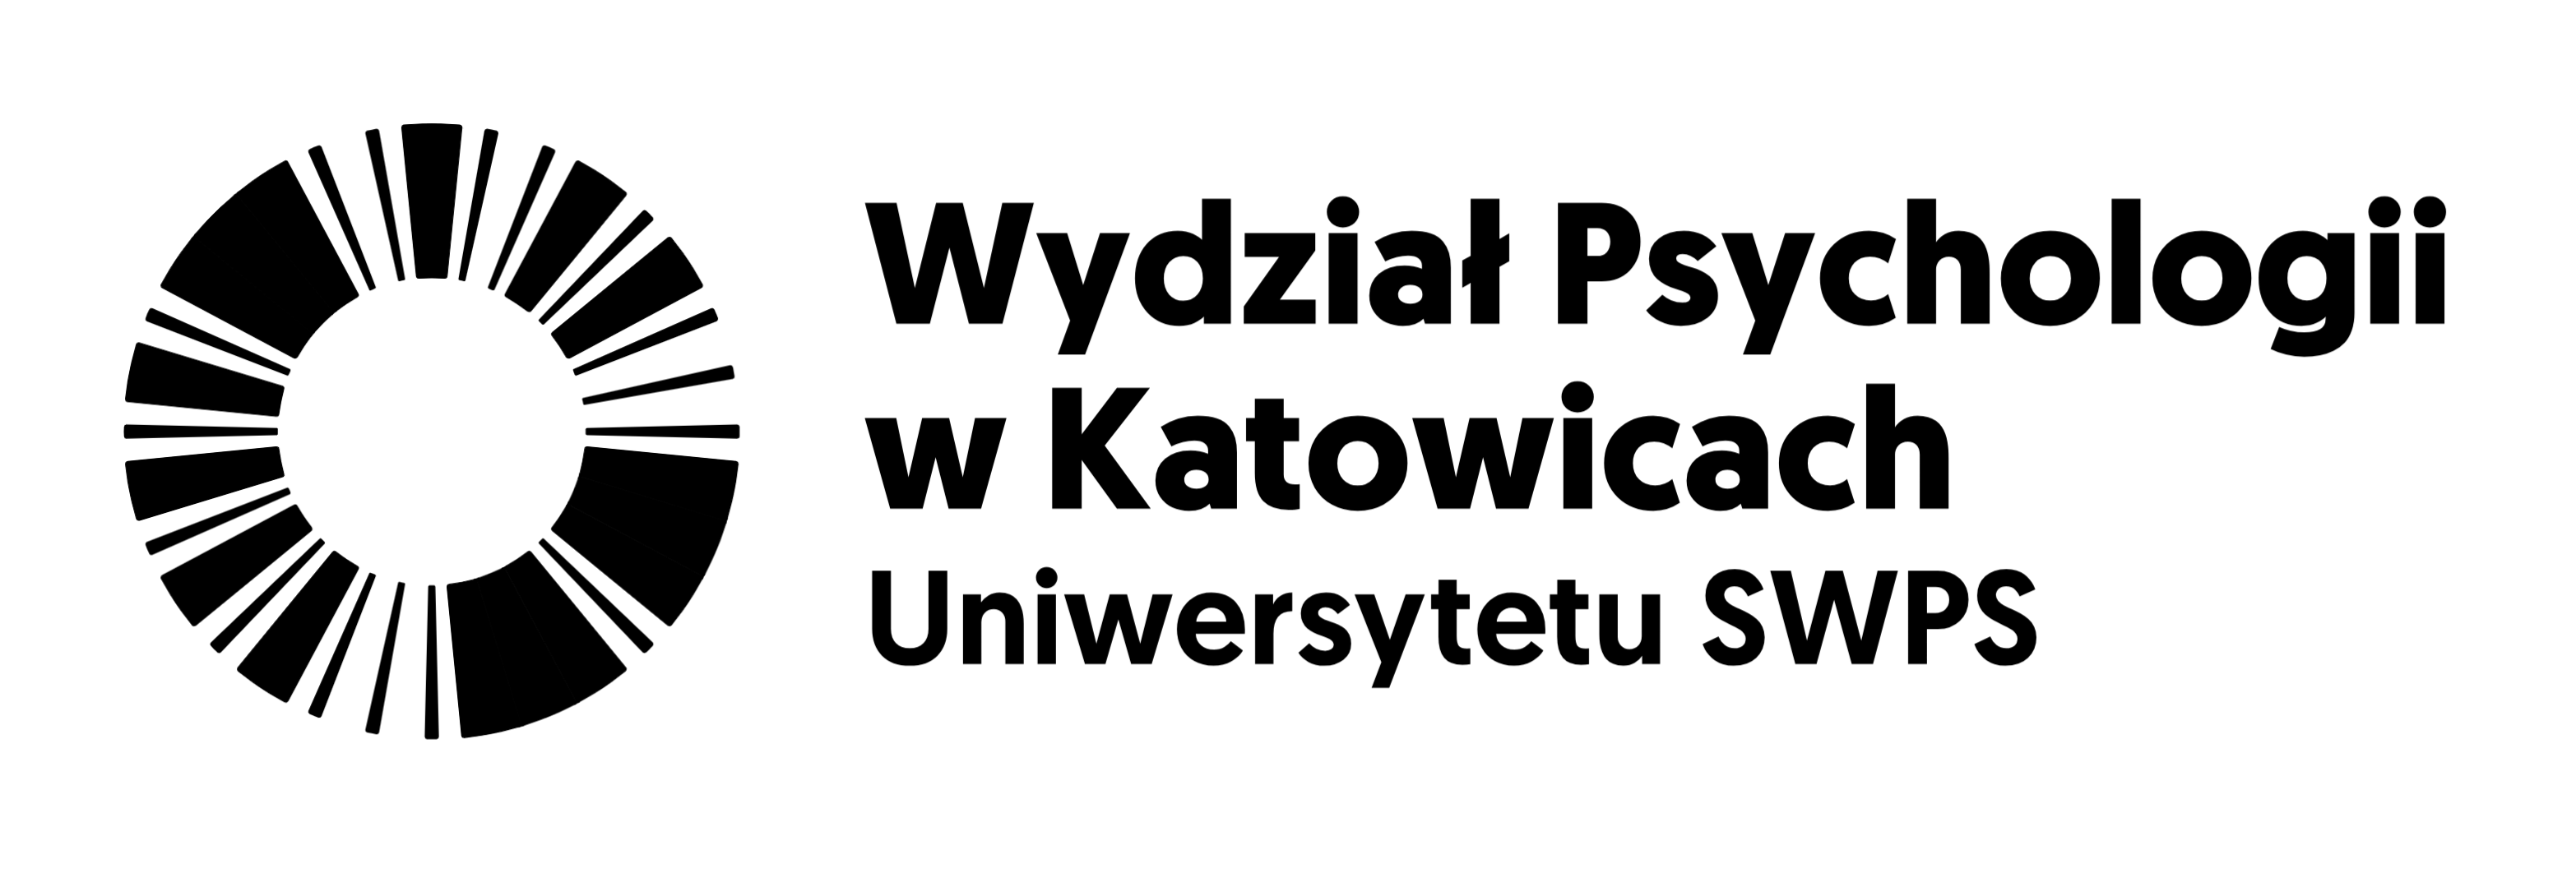 Wydział Psychologii w Katowicach, logo